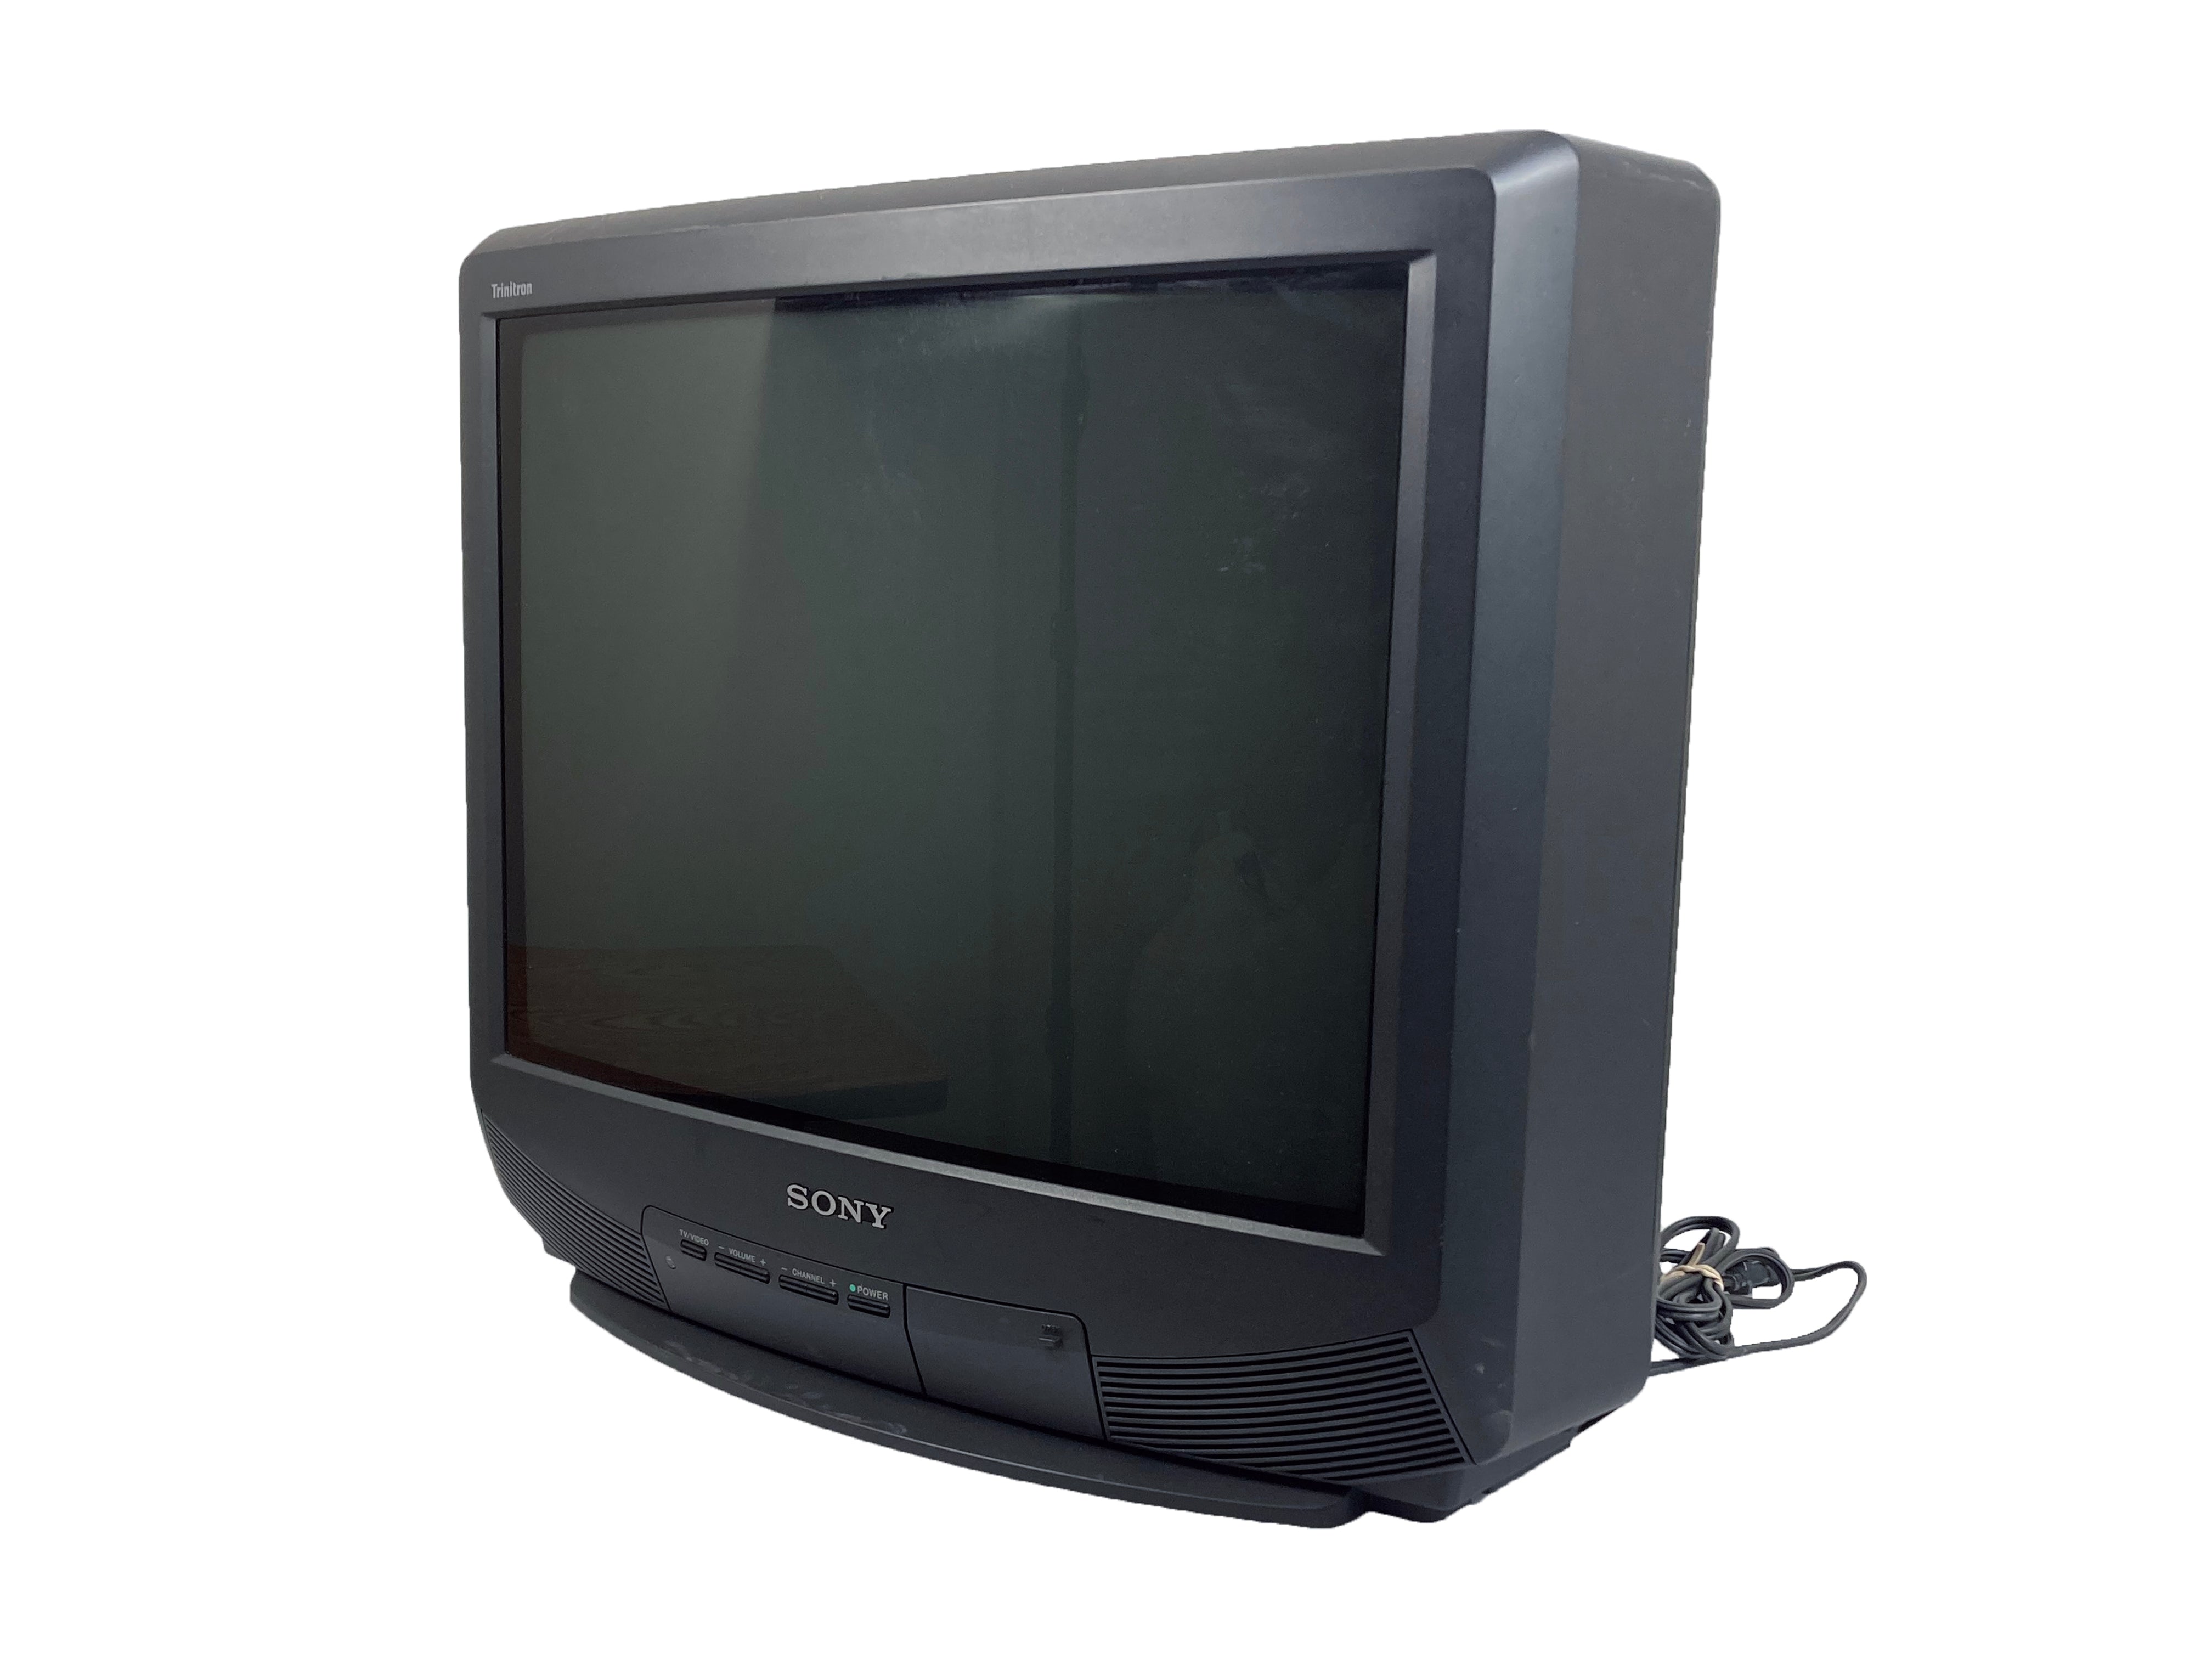 Sony KV-20S10 20" Trinitron Television